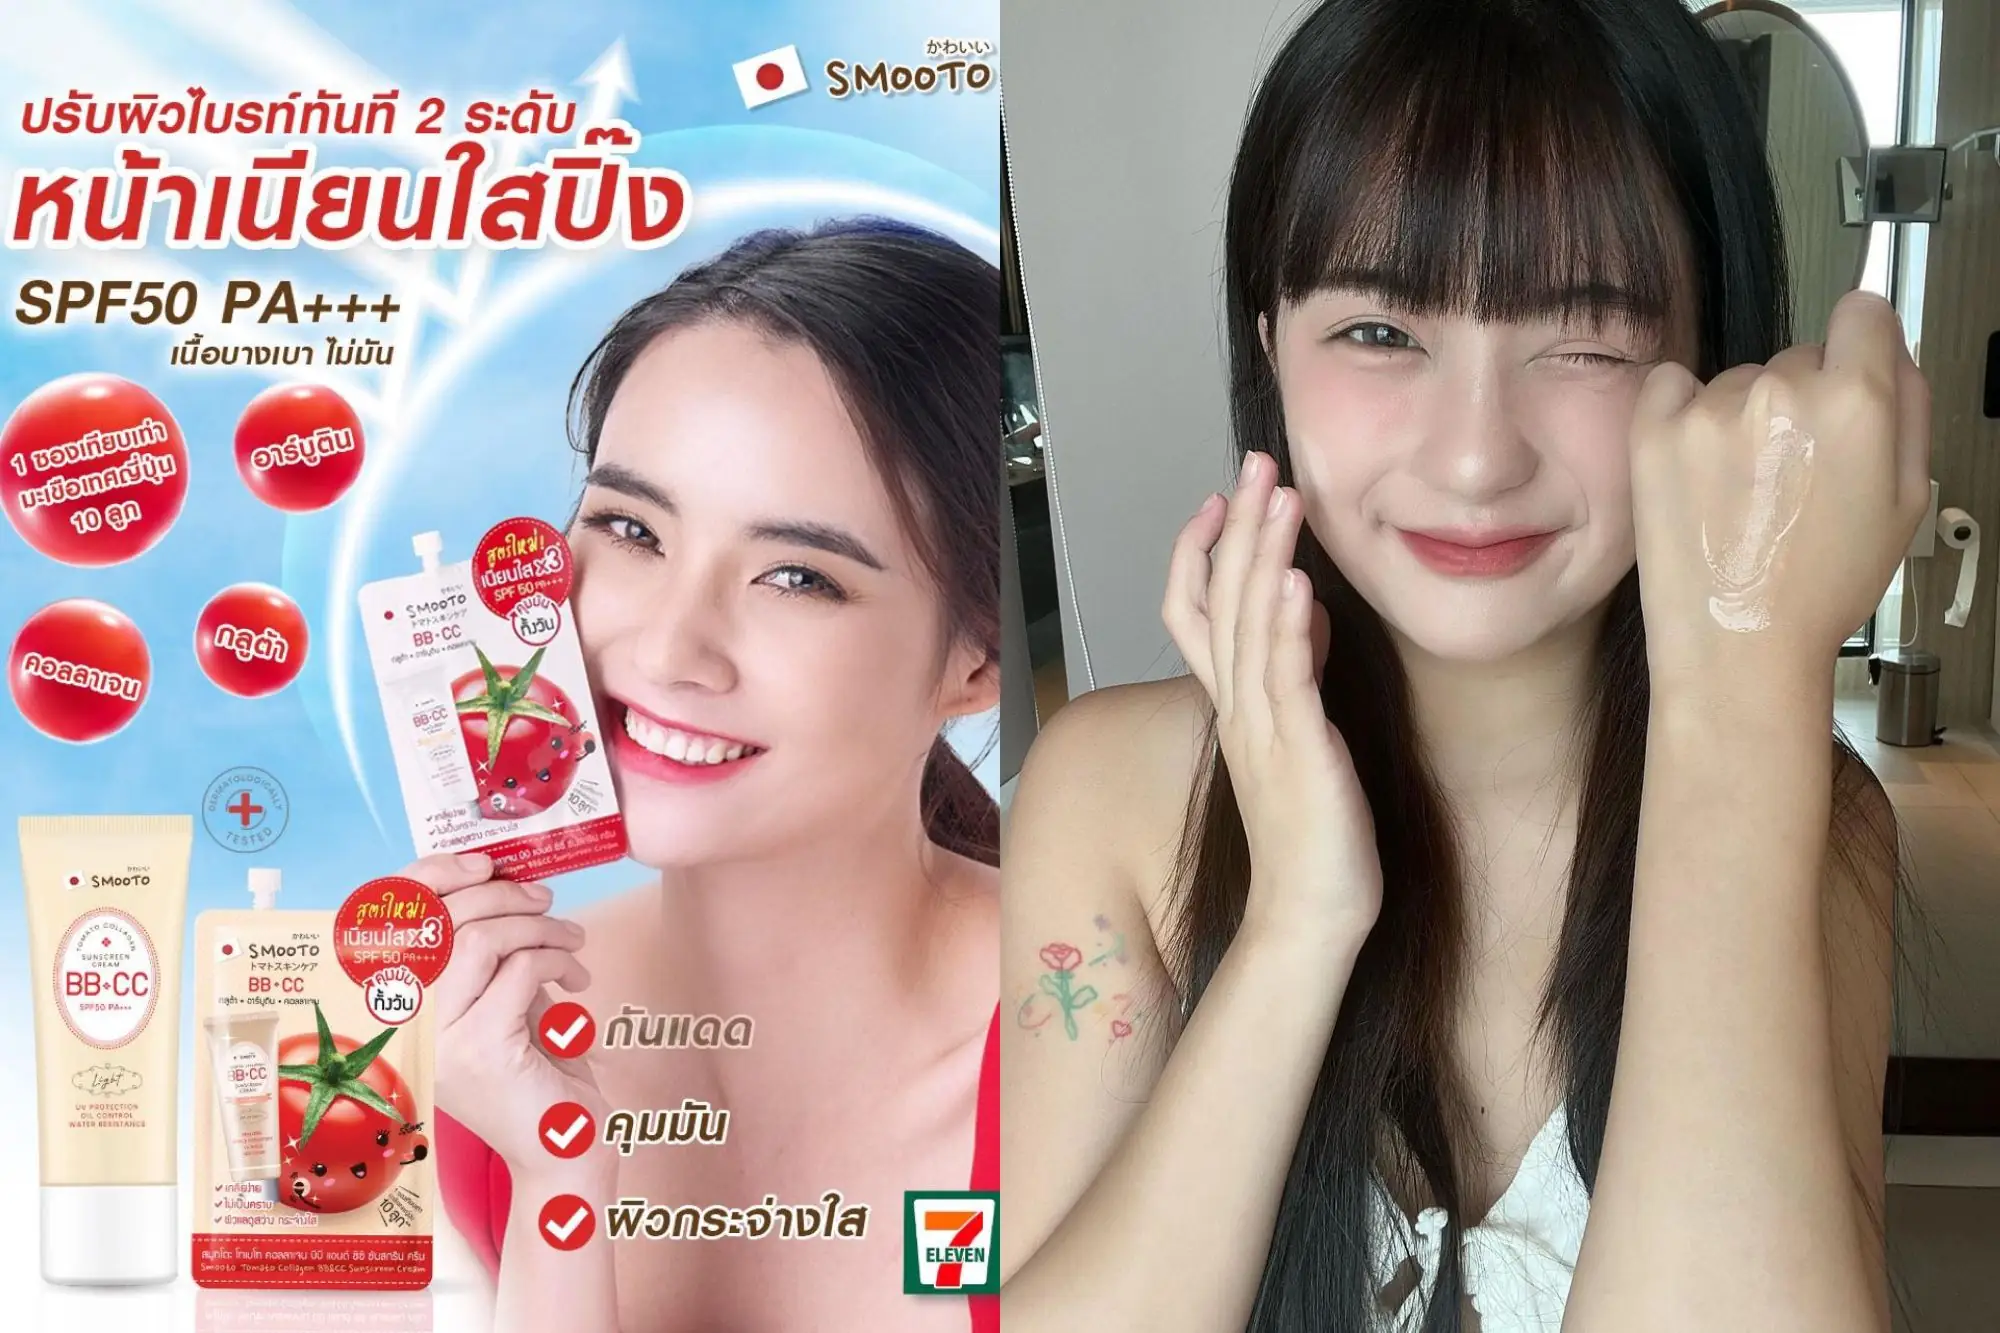 Smooto是许多网友在泰国7-11必买的热门品牌！（图片来源：官方FB）